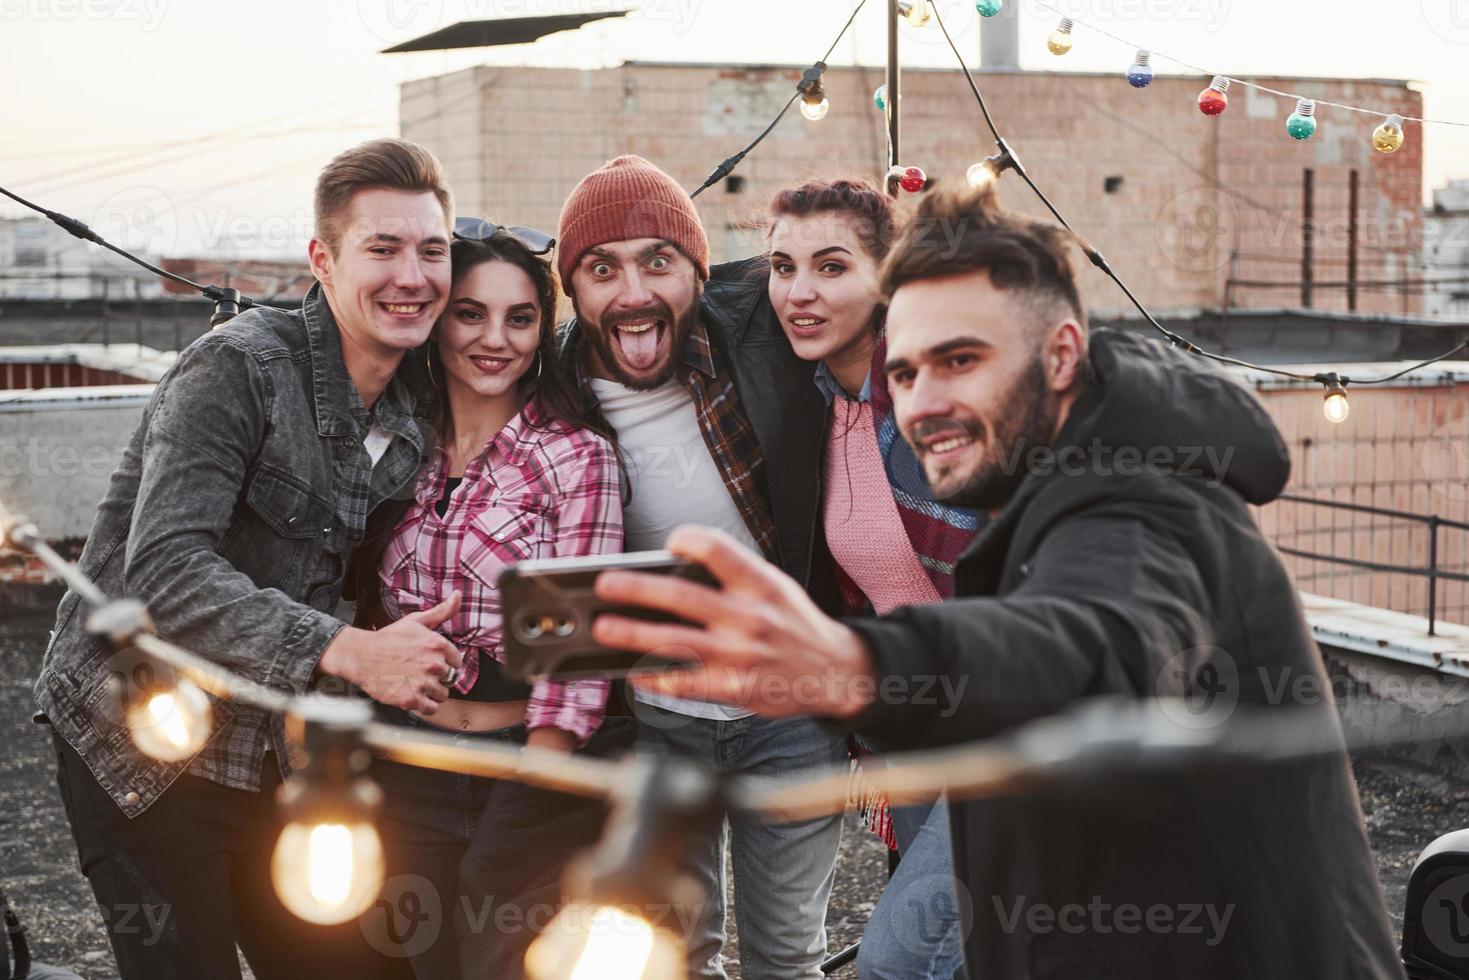 cara no meio faz uma careta engraçada. grupo de jovens amigos alegres se divertindo, se abraçando e tirando selfie no telhado com lâmpadas decorativas foto